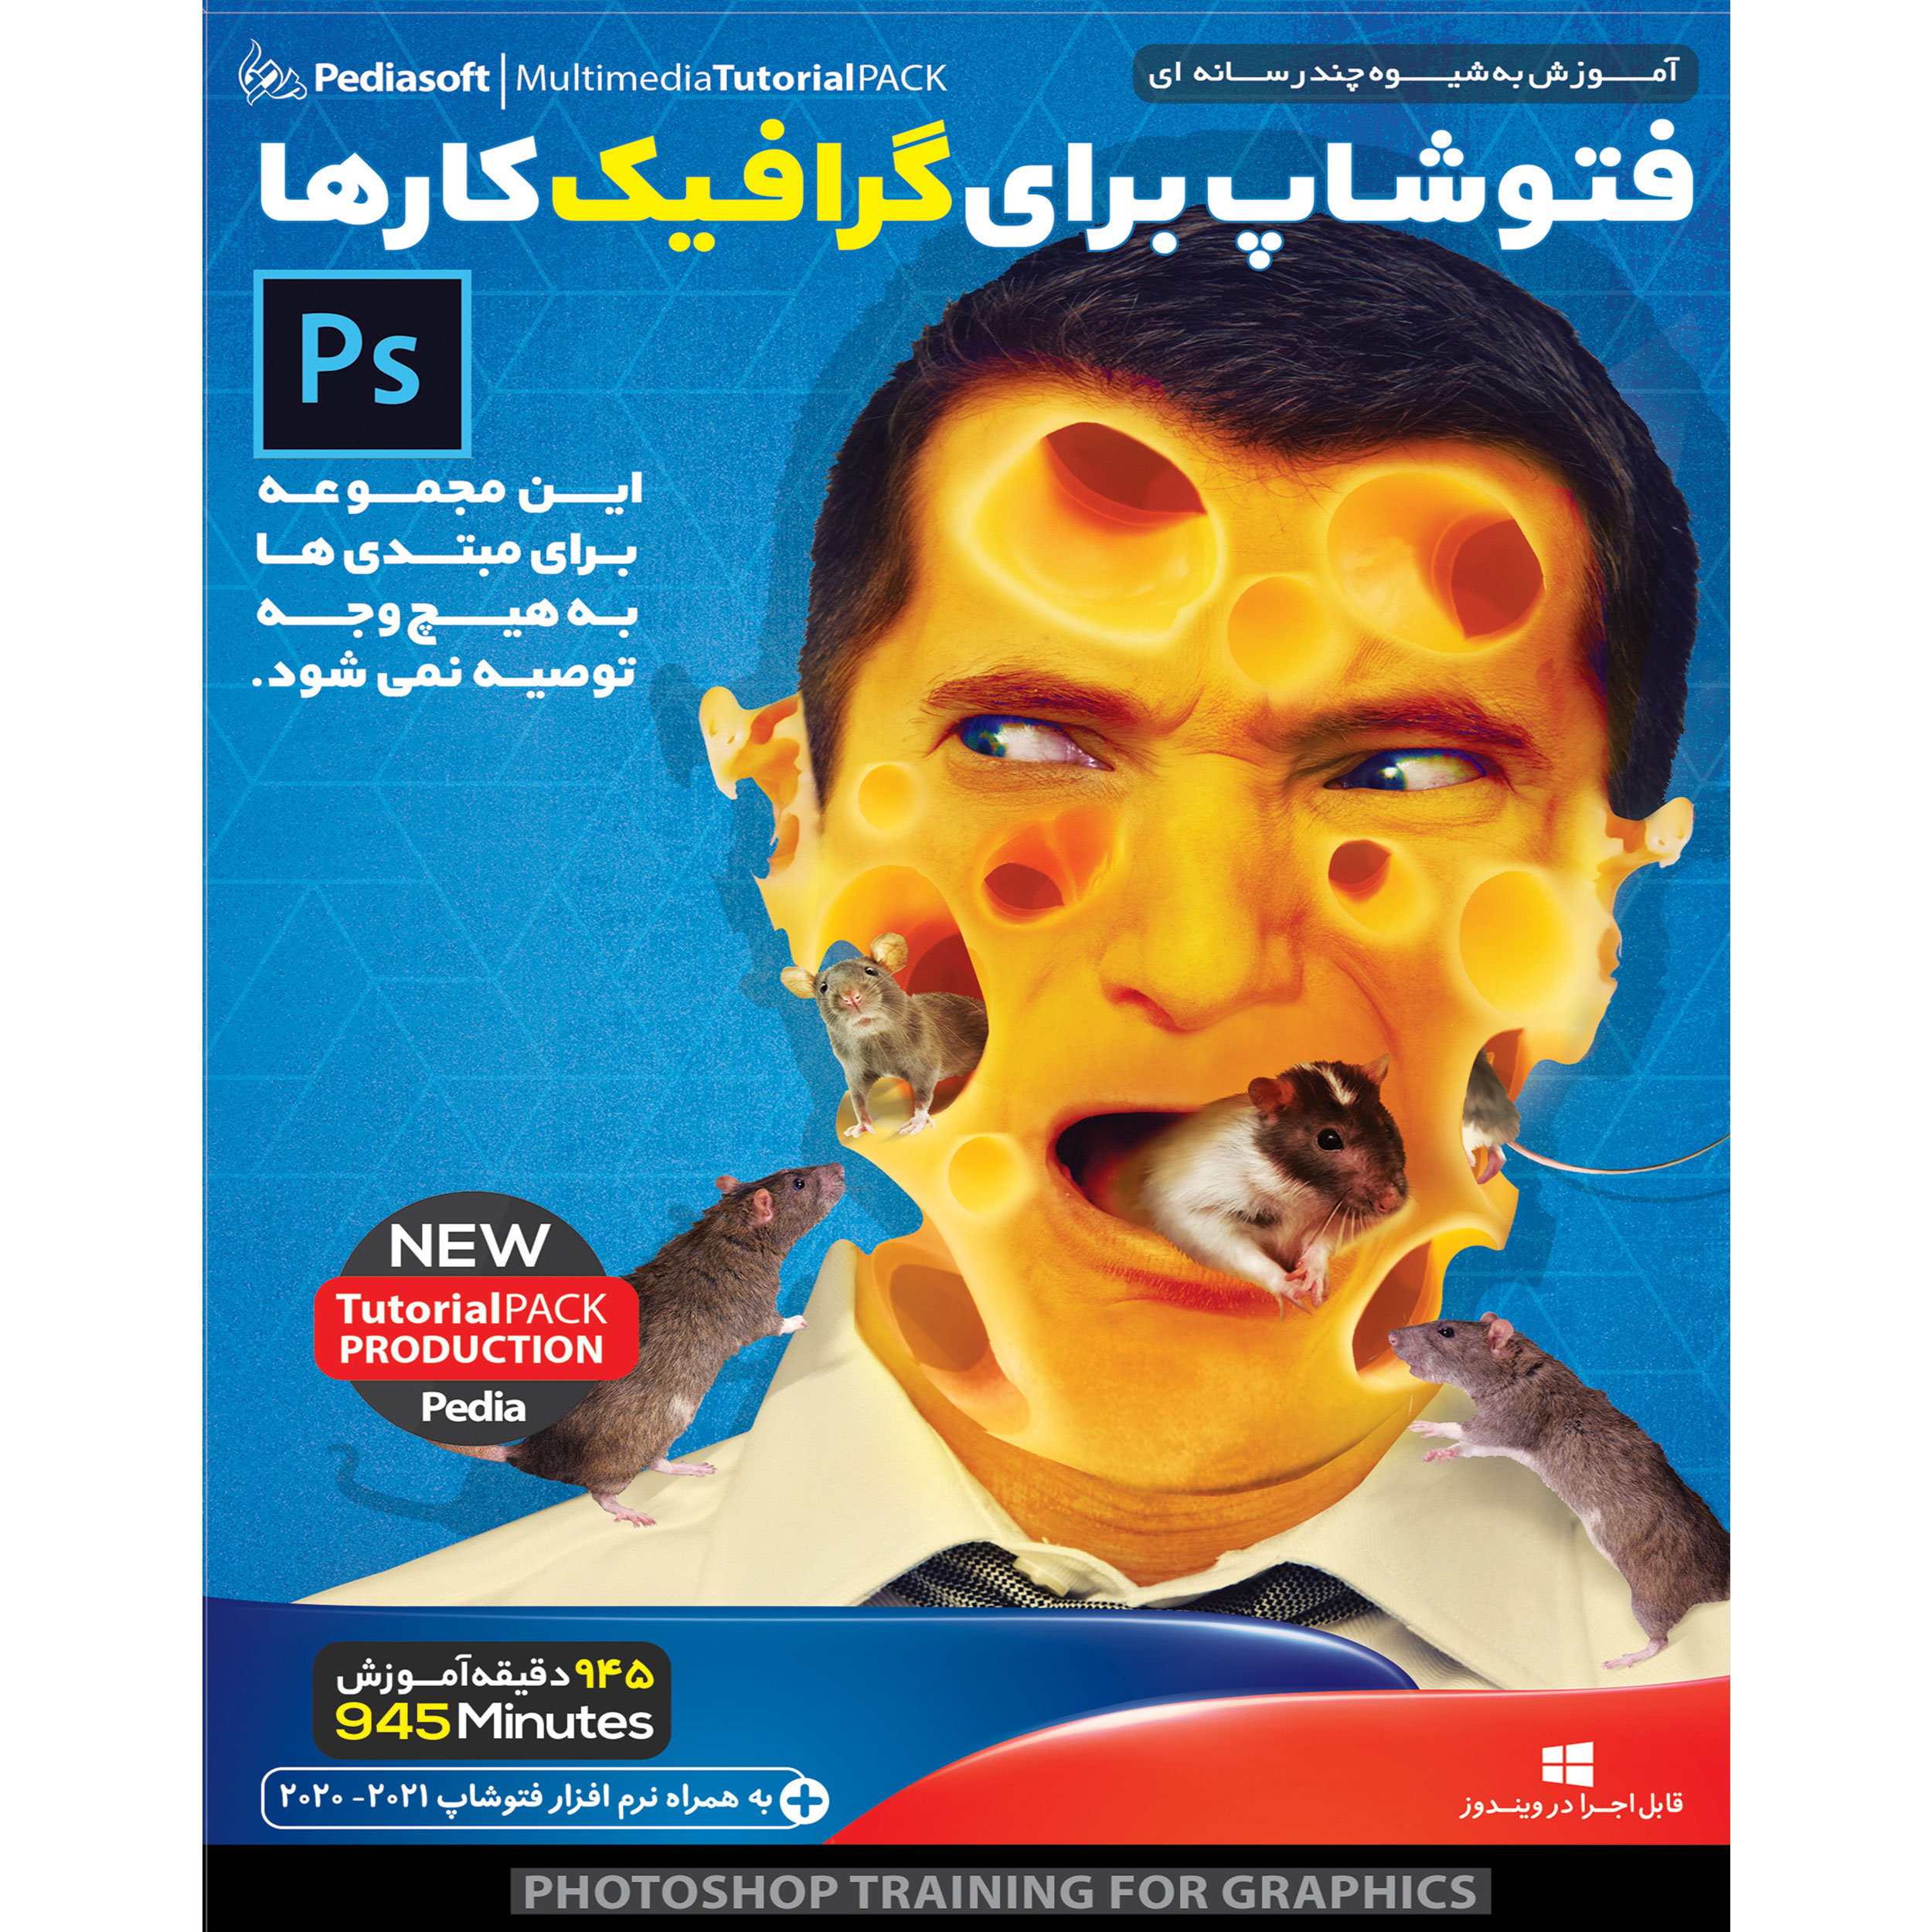 نرم افزار روتوش چهره در فتوشاپ نشر پدیا سافت به همراه نرم افزار آموزش فتوشاپ برای گرافیک کار ها